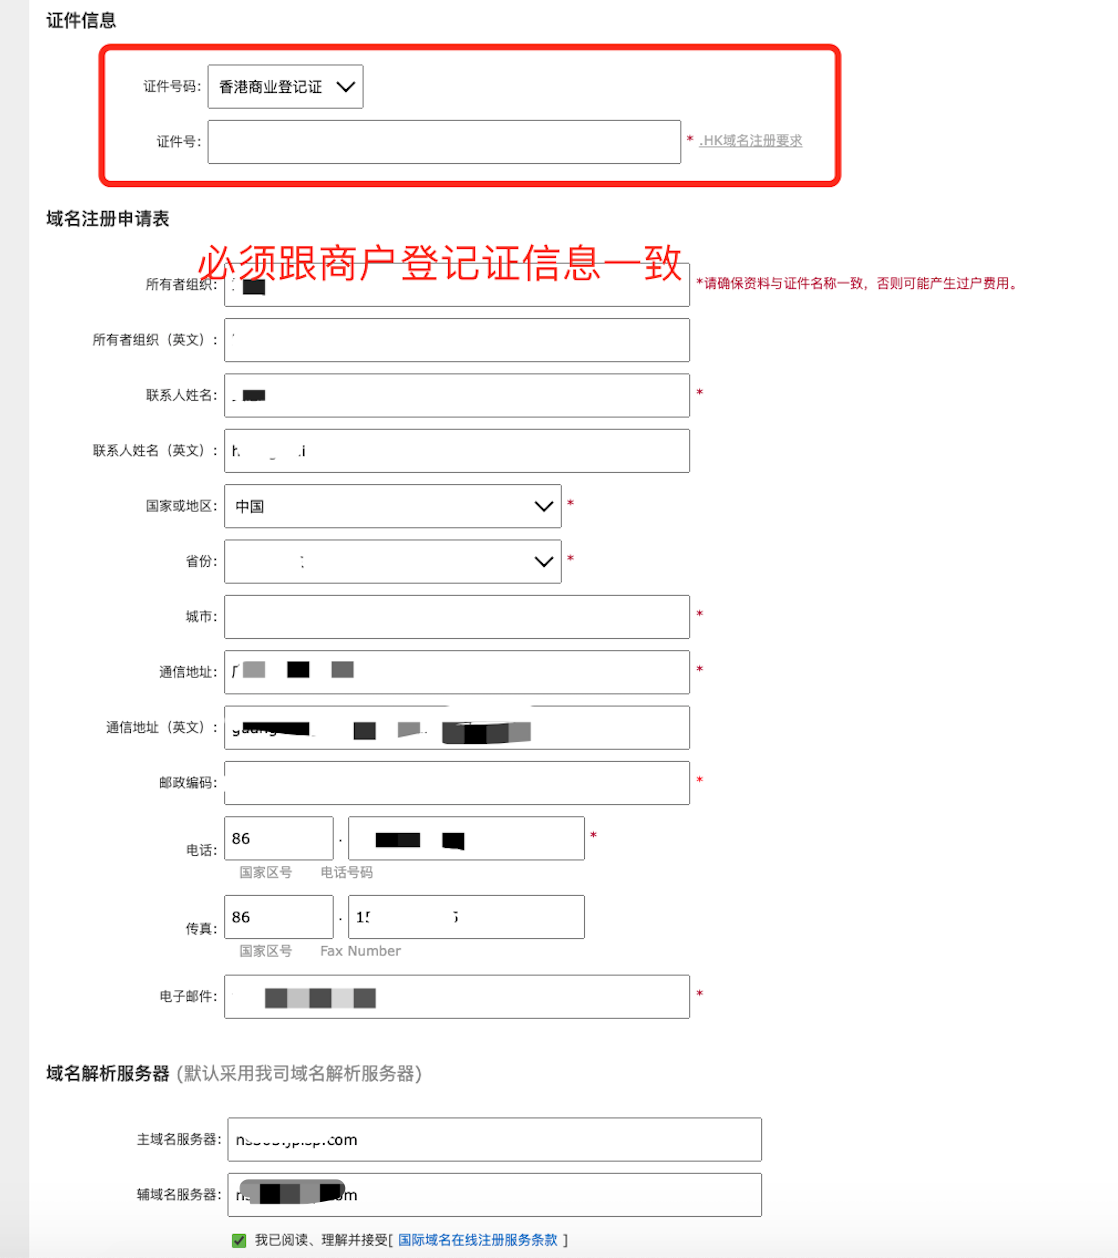 注册.com.hk域名方法